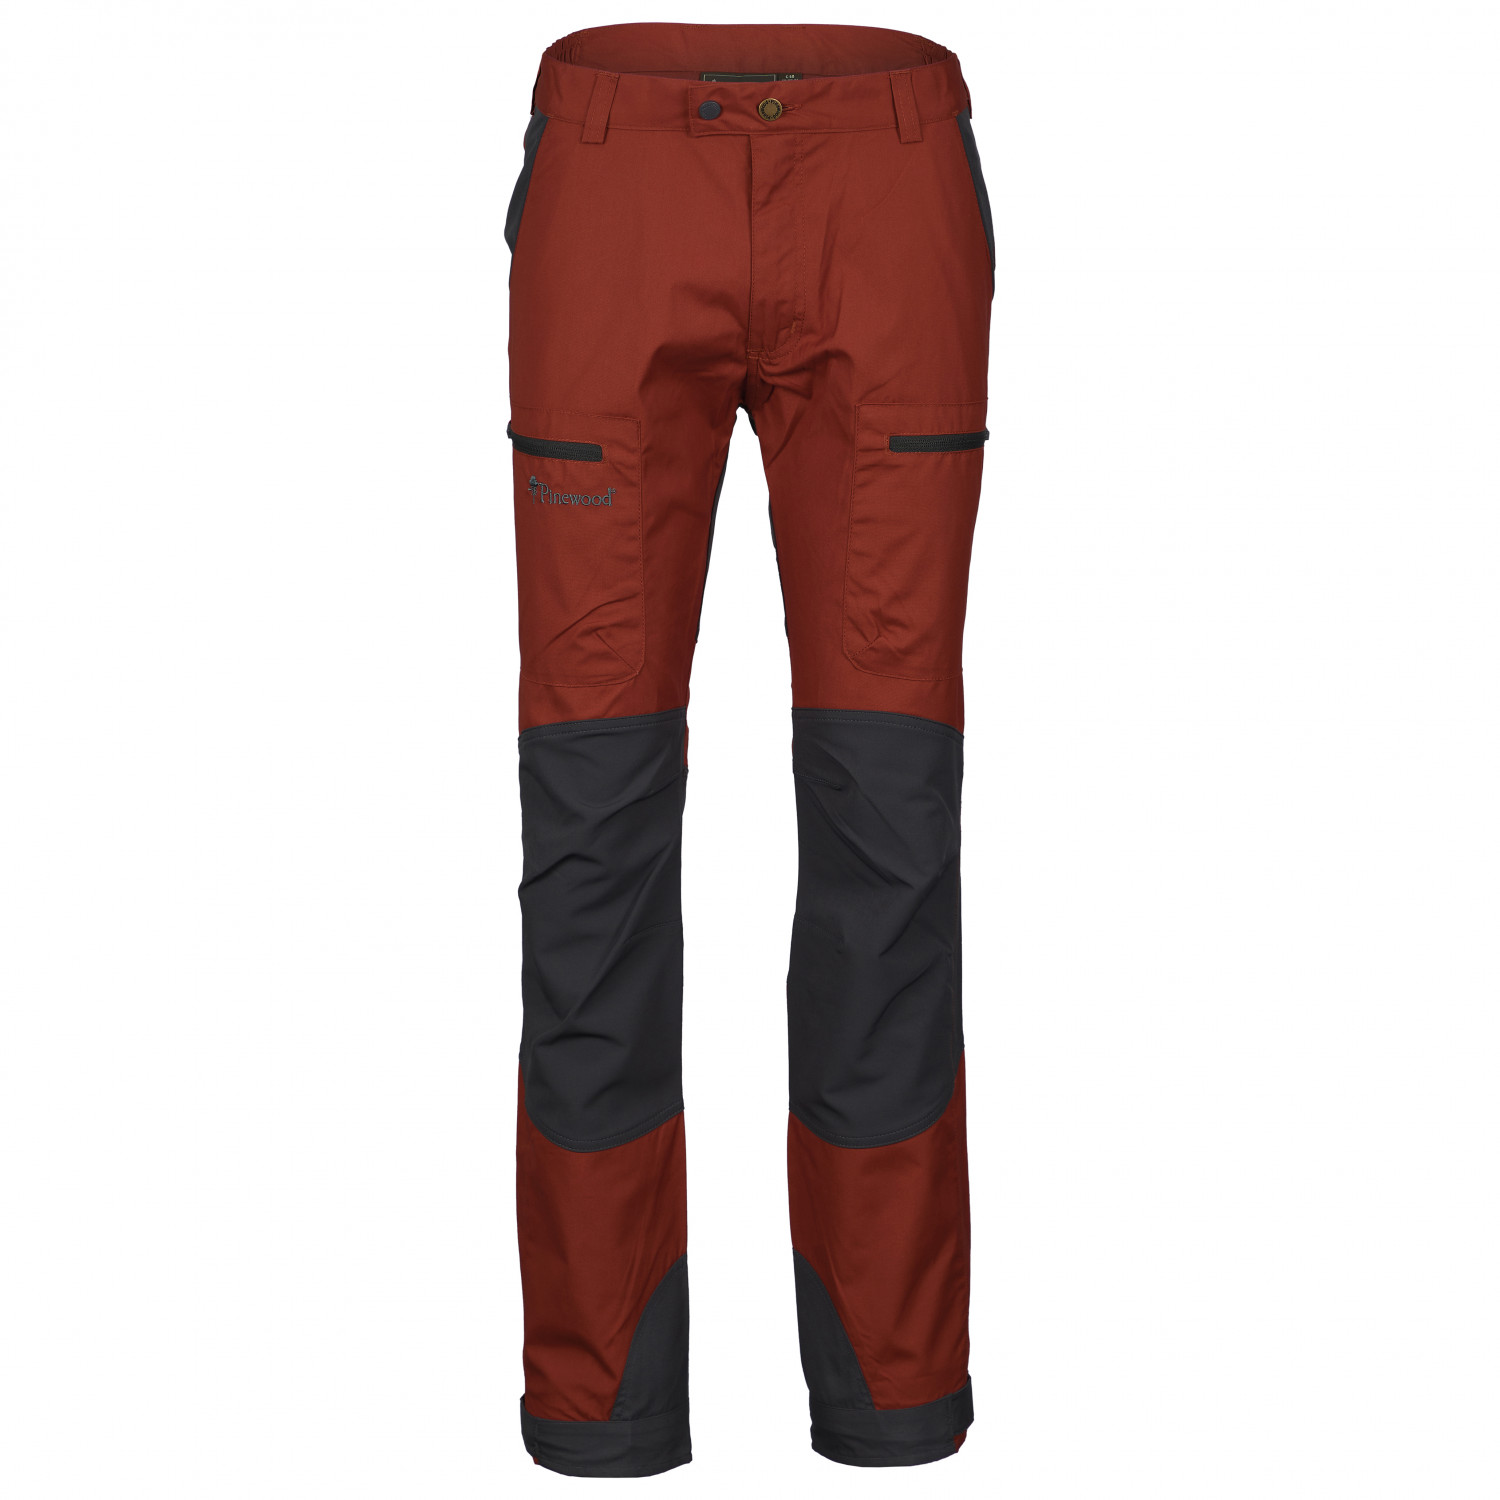 Трекинговые брюки Pinewood Caribou TC Hose, цвет Terracotta/Grey